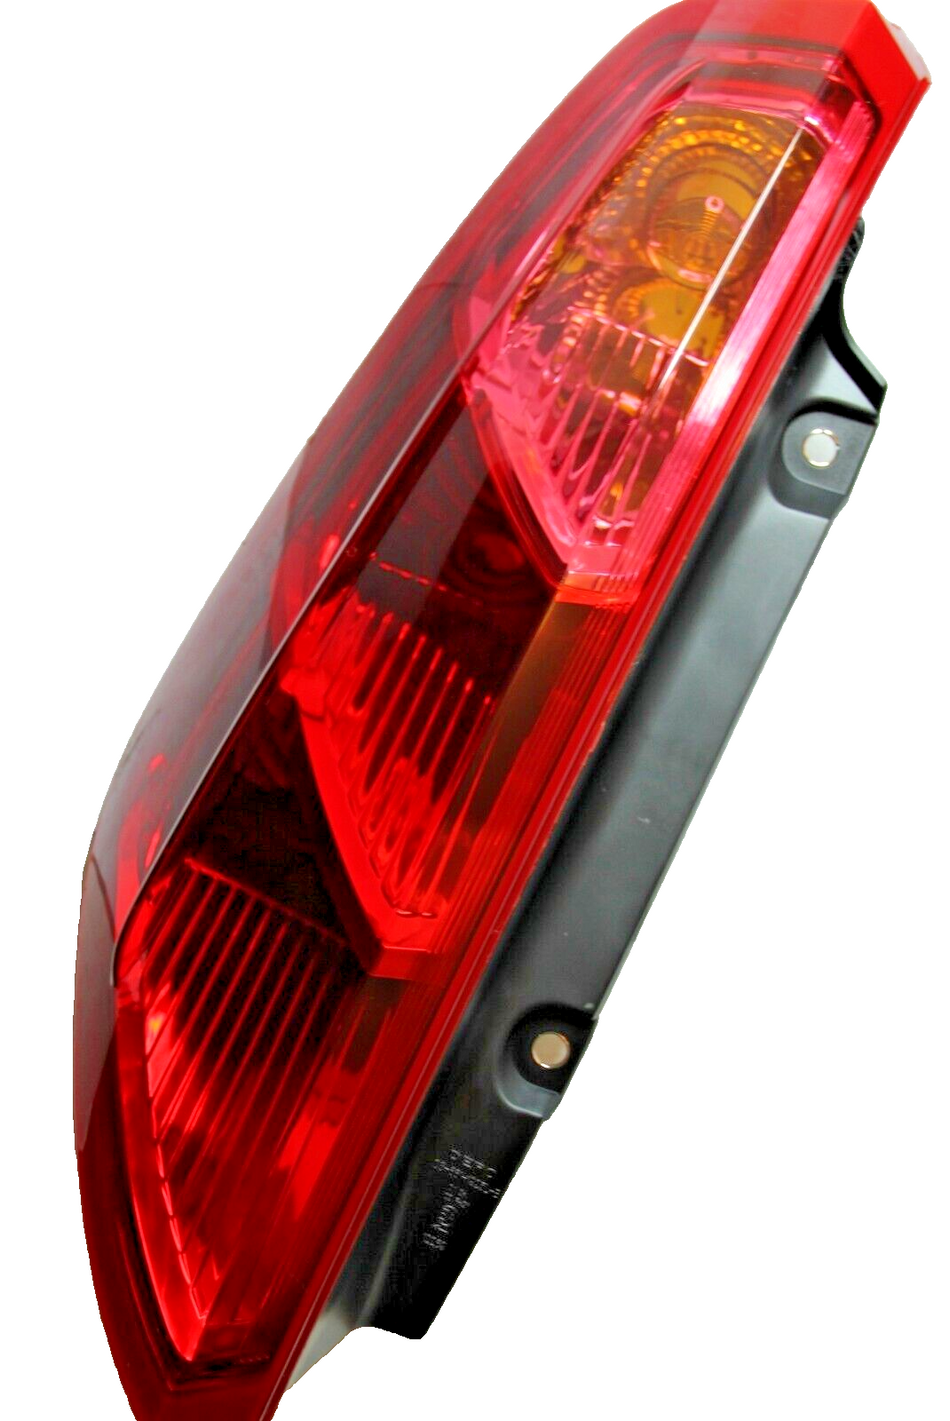 FIAT GRANDE PUNTO Rear Light BACK Lamp TAIL LAMP N/S LEFT UK PASSENGER SIDE